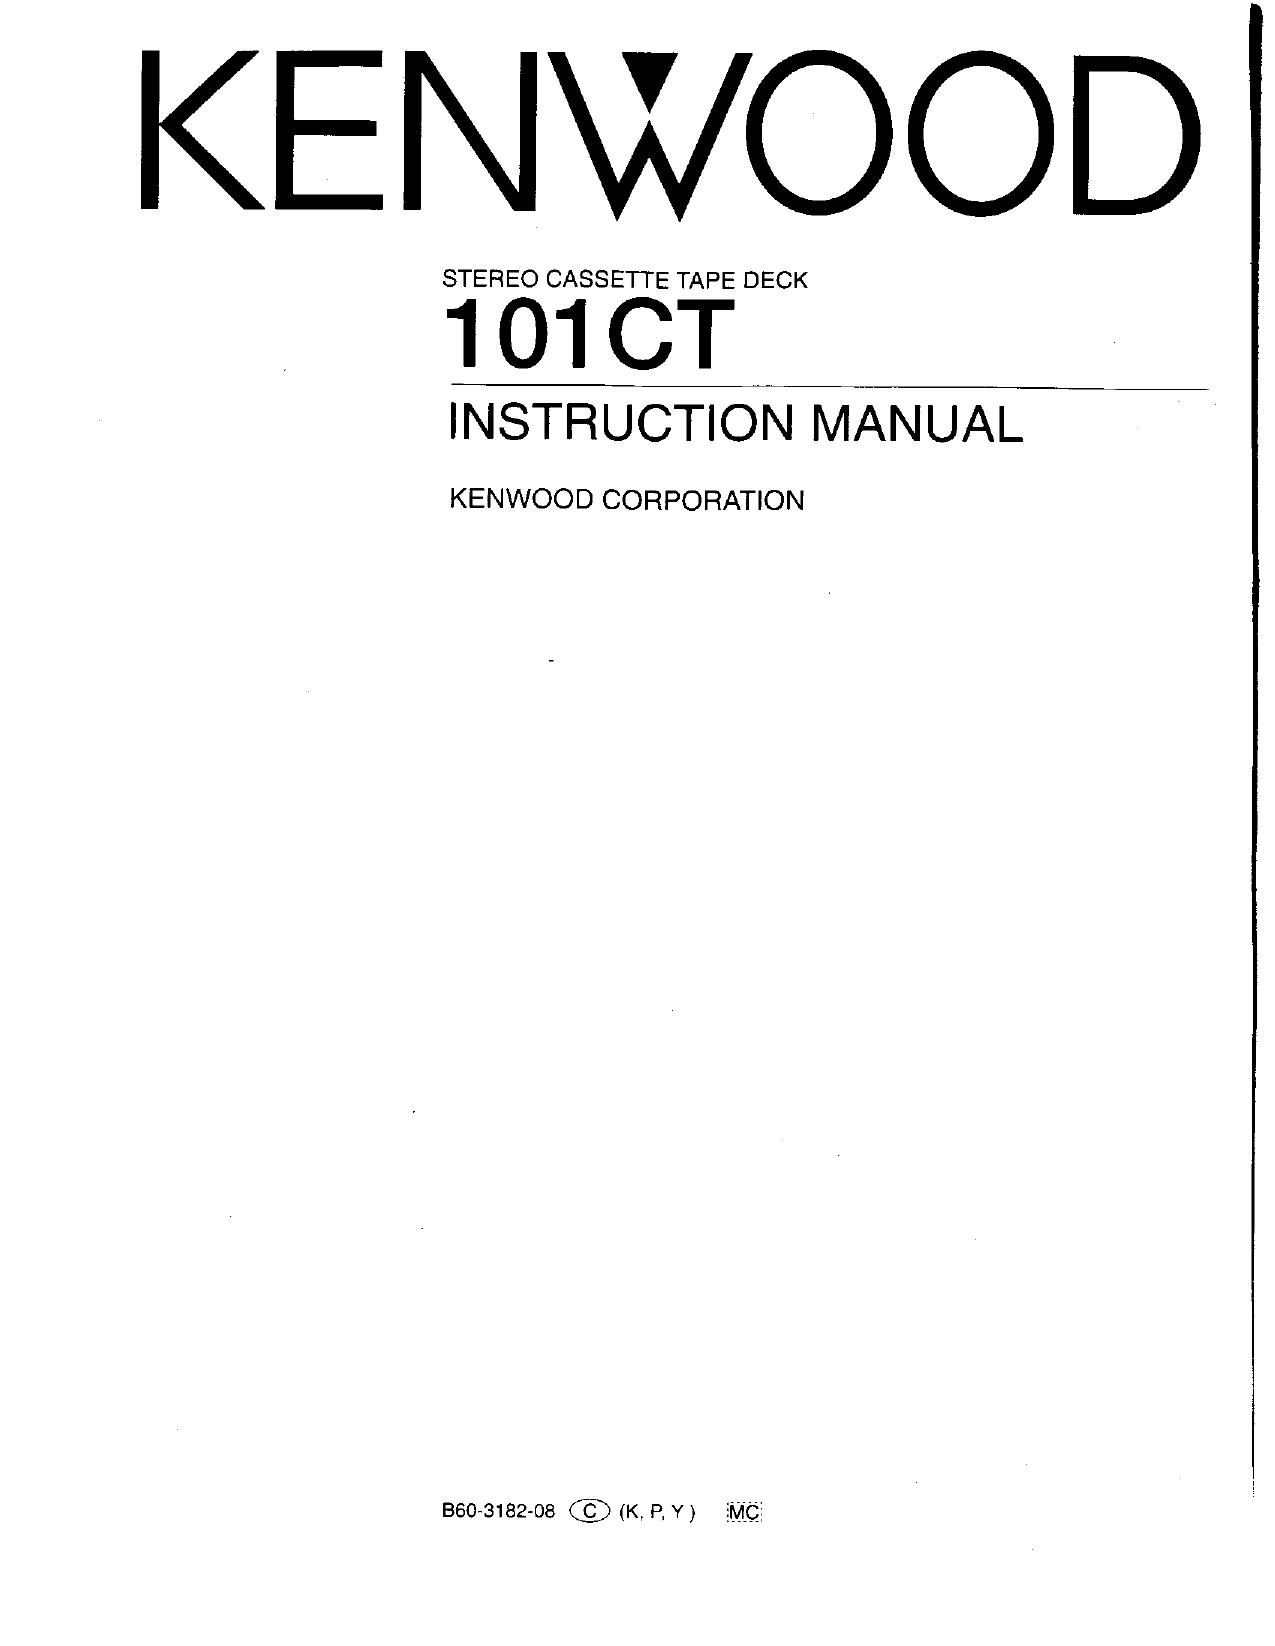 Kenwood 101 CT Service Manual